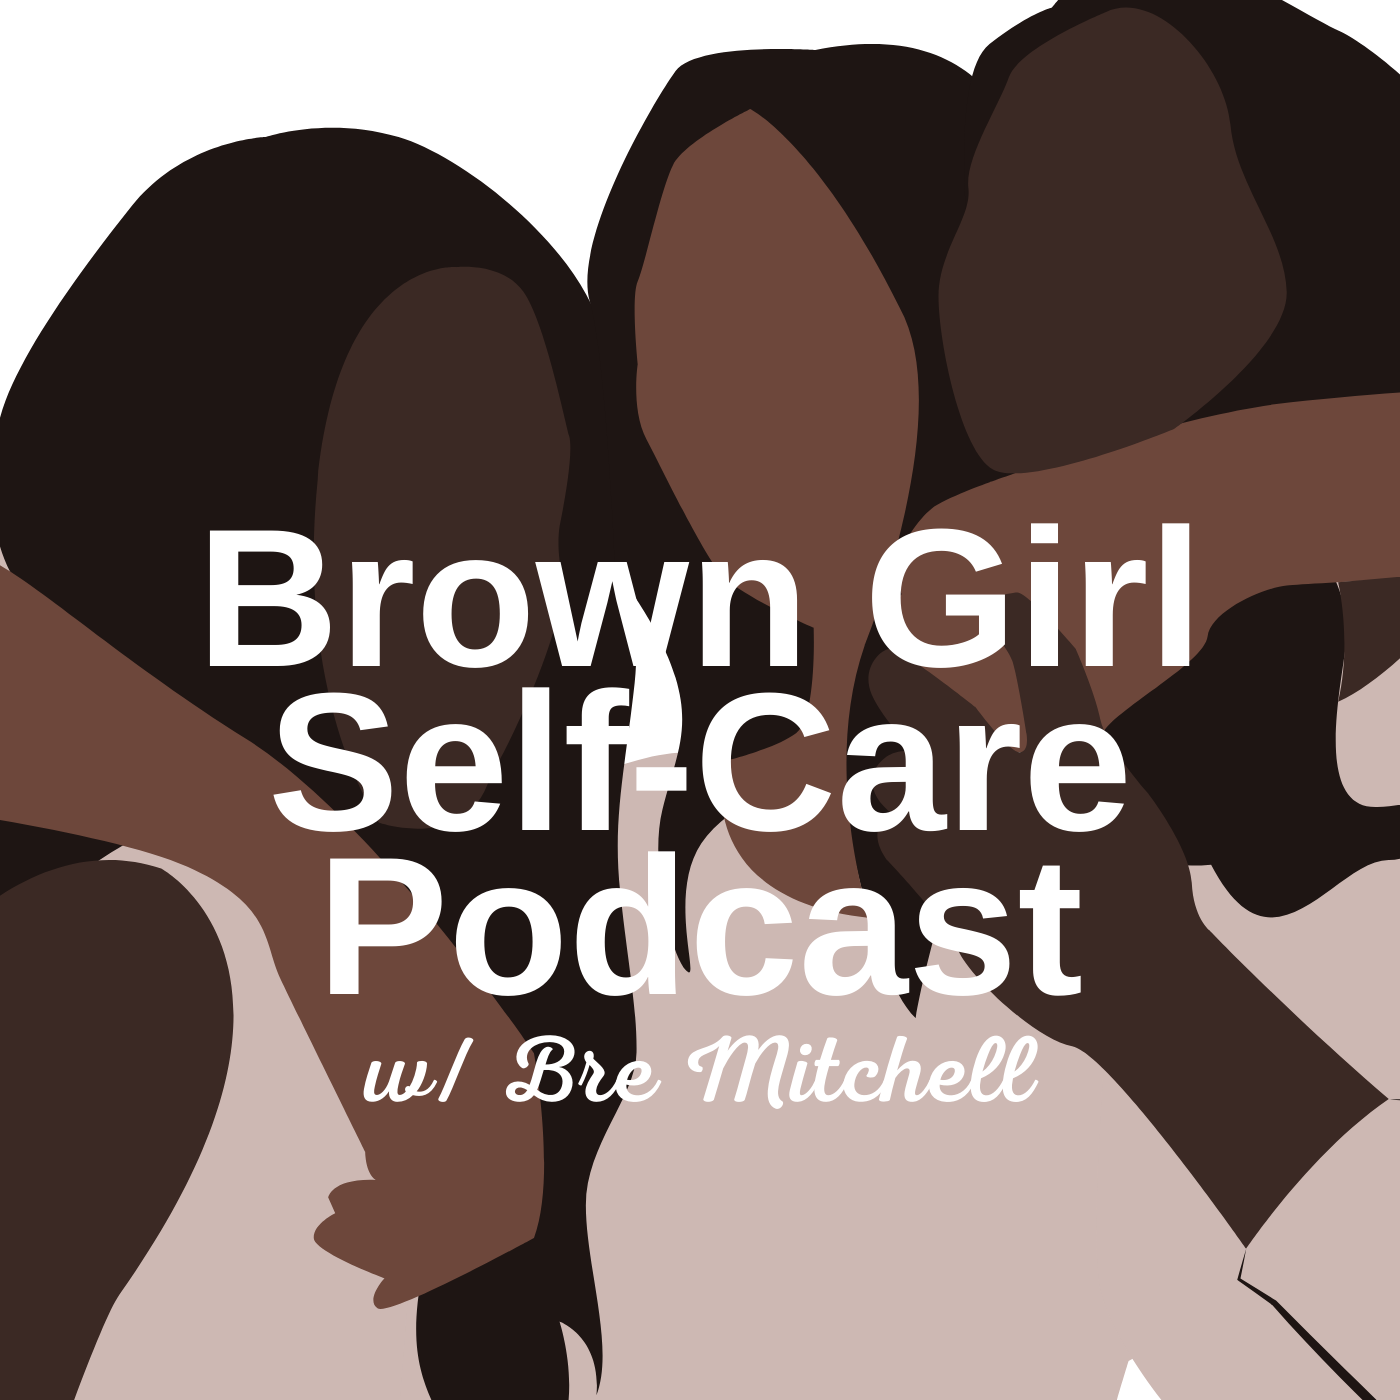 Brown Girl Self-Care:Brown Girl Self-Care